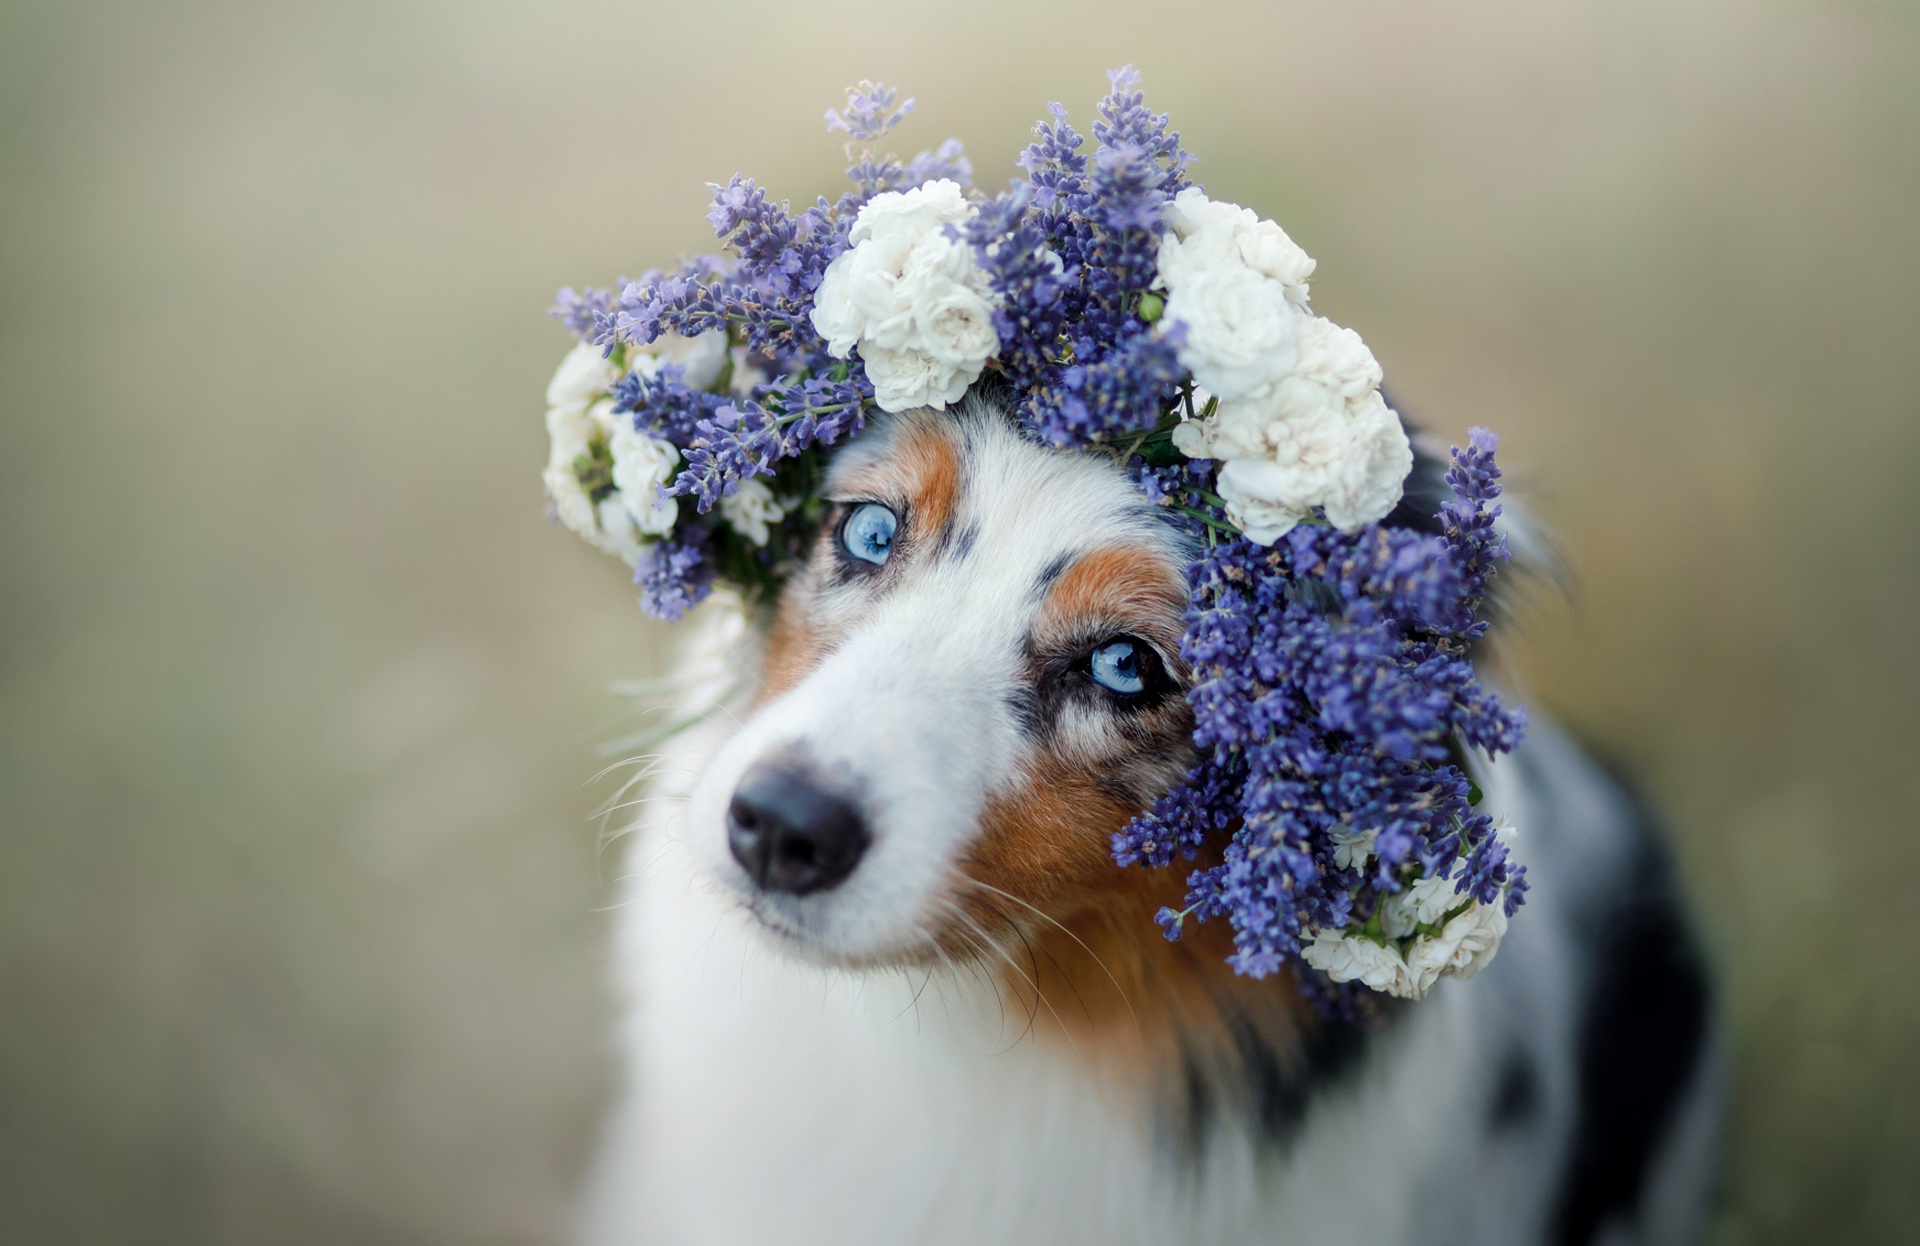 Free download wallpaper Dogs, Flower, Dog, Animal, Australian Shepherd, Wreath on your PC desktop